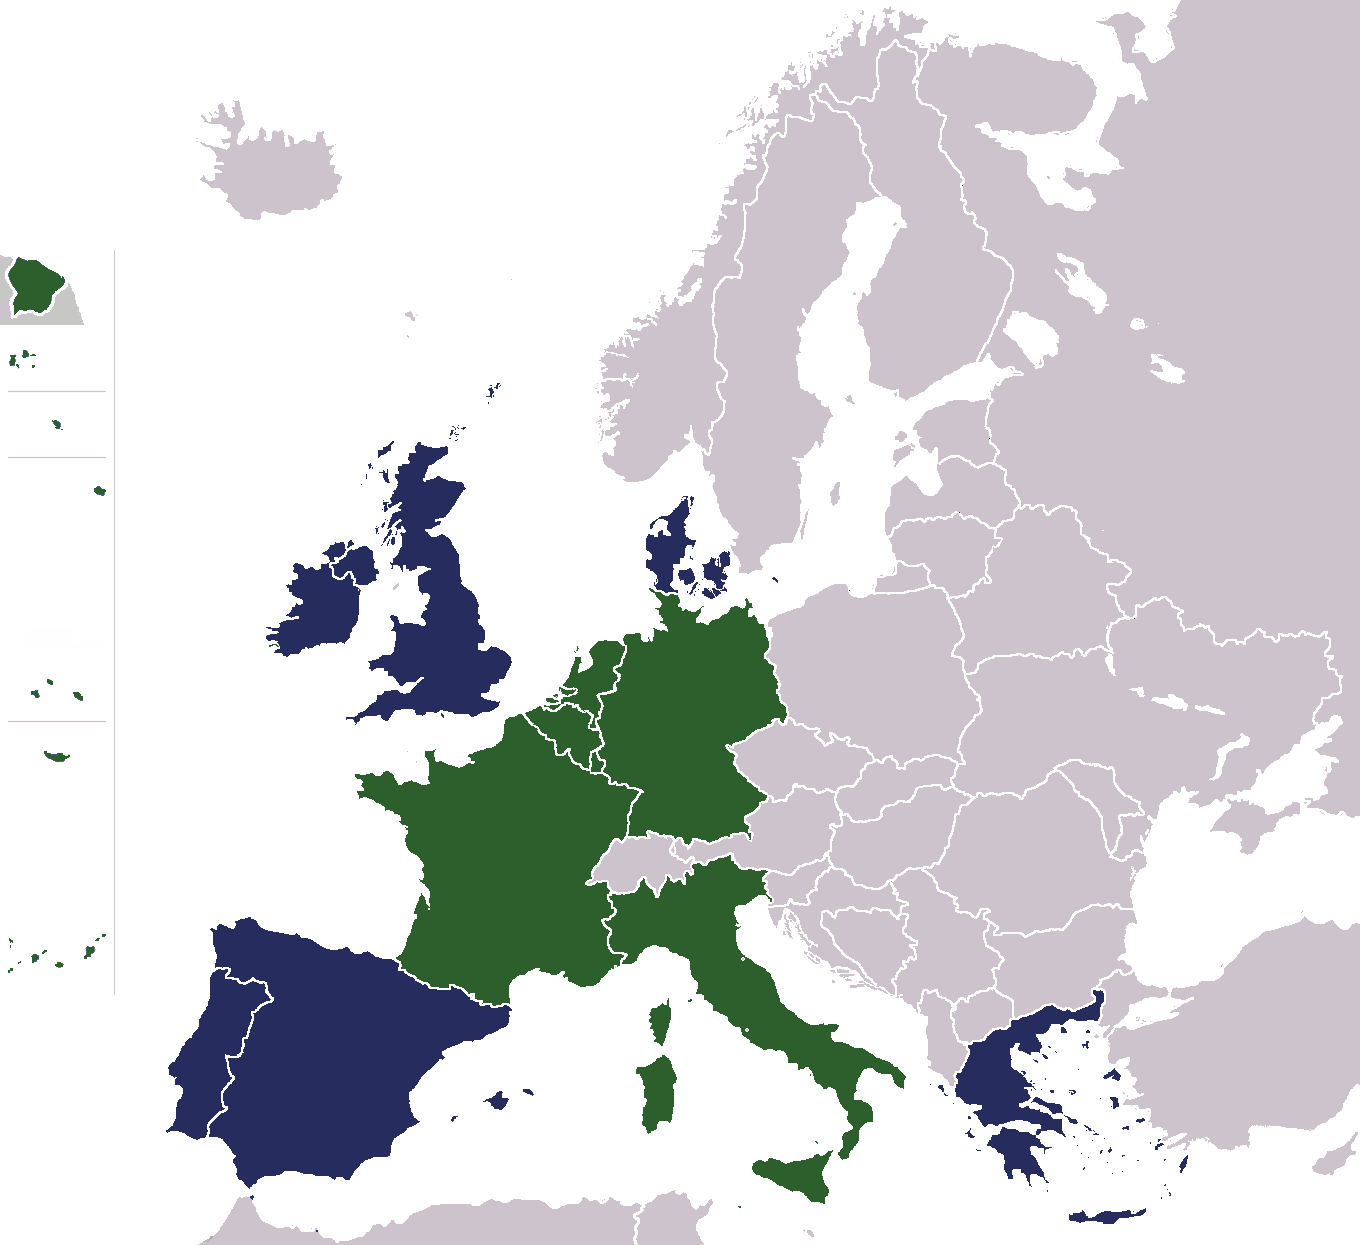 Grafika przedstawia mapę Europy. Są na niej zaznaczone kontury państw. Na mapie zaznaczone są państwa założycielskie Wspólnoty Eutropejskiej, czyli RFN, Francja, Włochy i kraje Beneluksu. Zaznaczone są także państwa, które dołączyły później do Traktatu o Unii Europejskiej: Irlandia, Wielka Brytania i Dania, Grecja, Hiszpania i Portugalia.